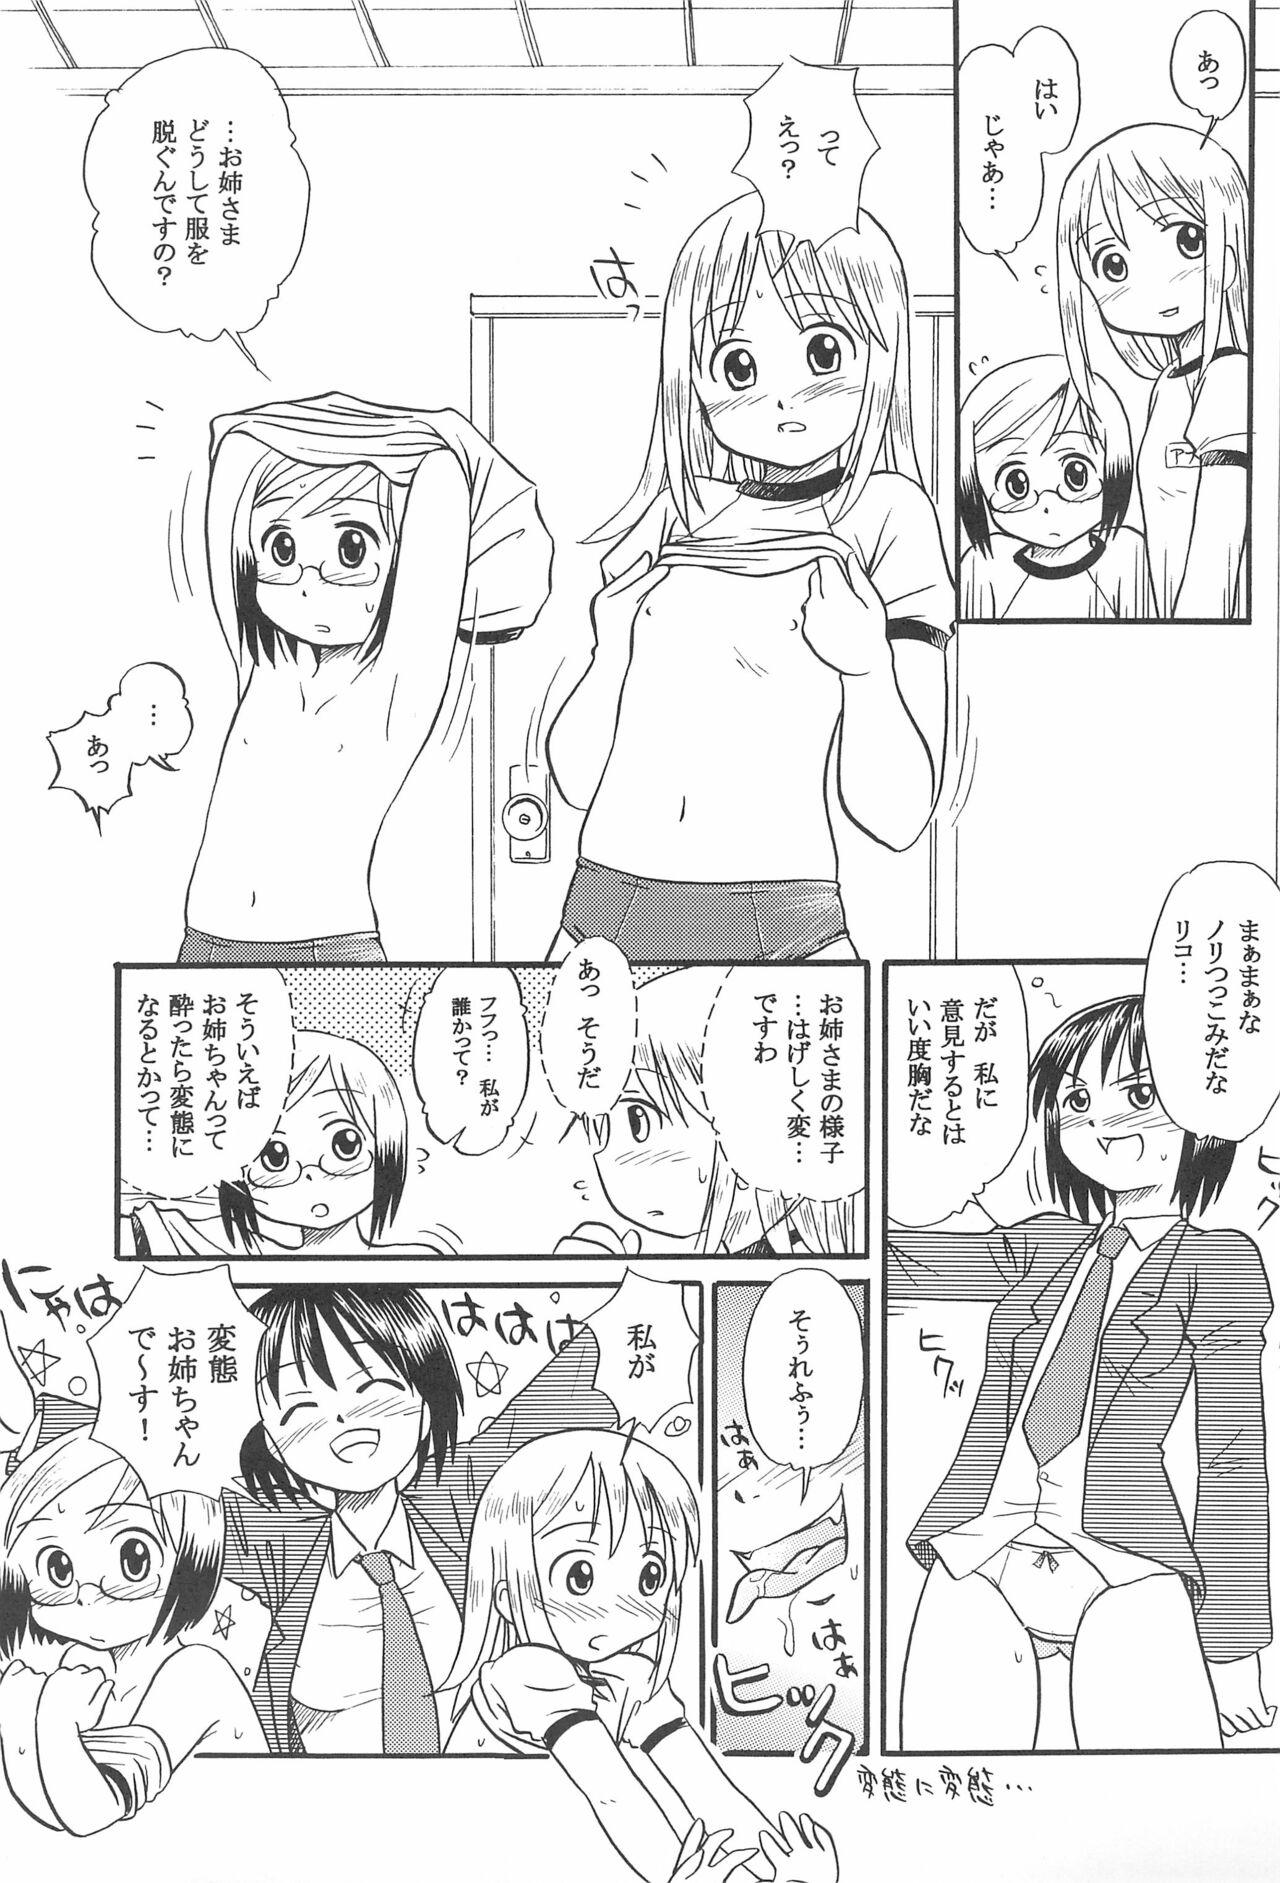 Titten Ichigo Renniu - Ichigo mashimaro Gapes Gaping Asshole - Page 7